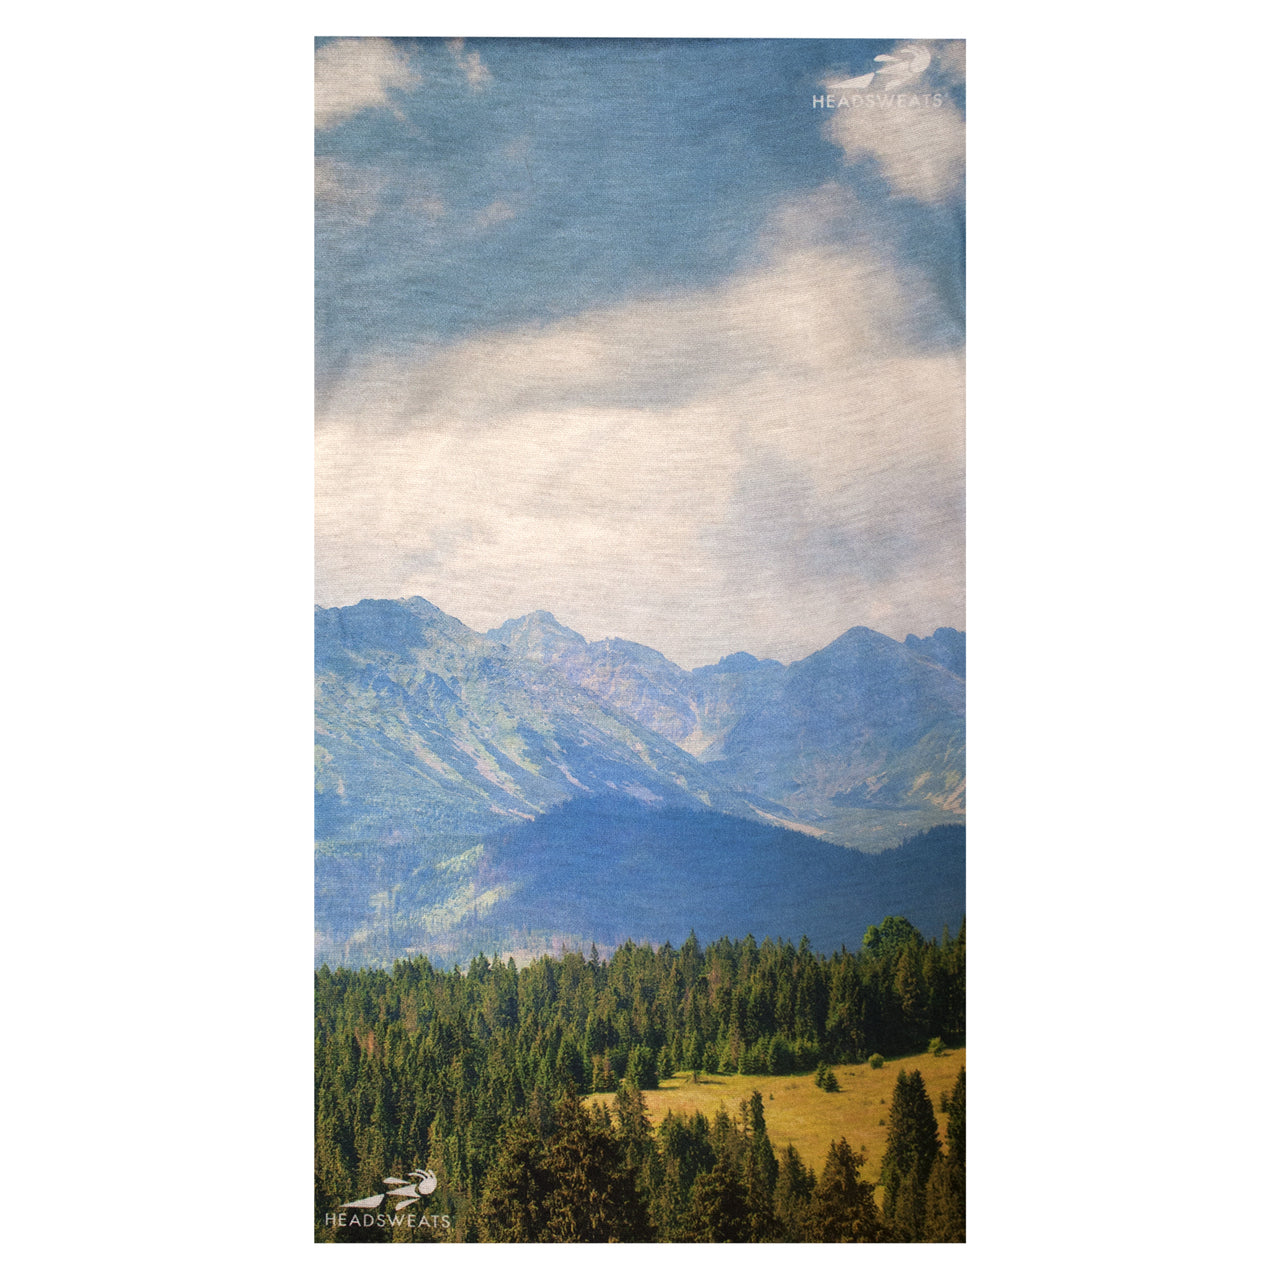 Ultra Band | Rocky Mountains | Multipurpose-Headsweats